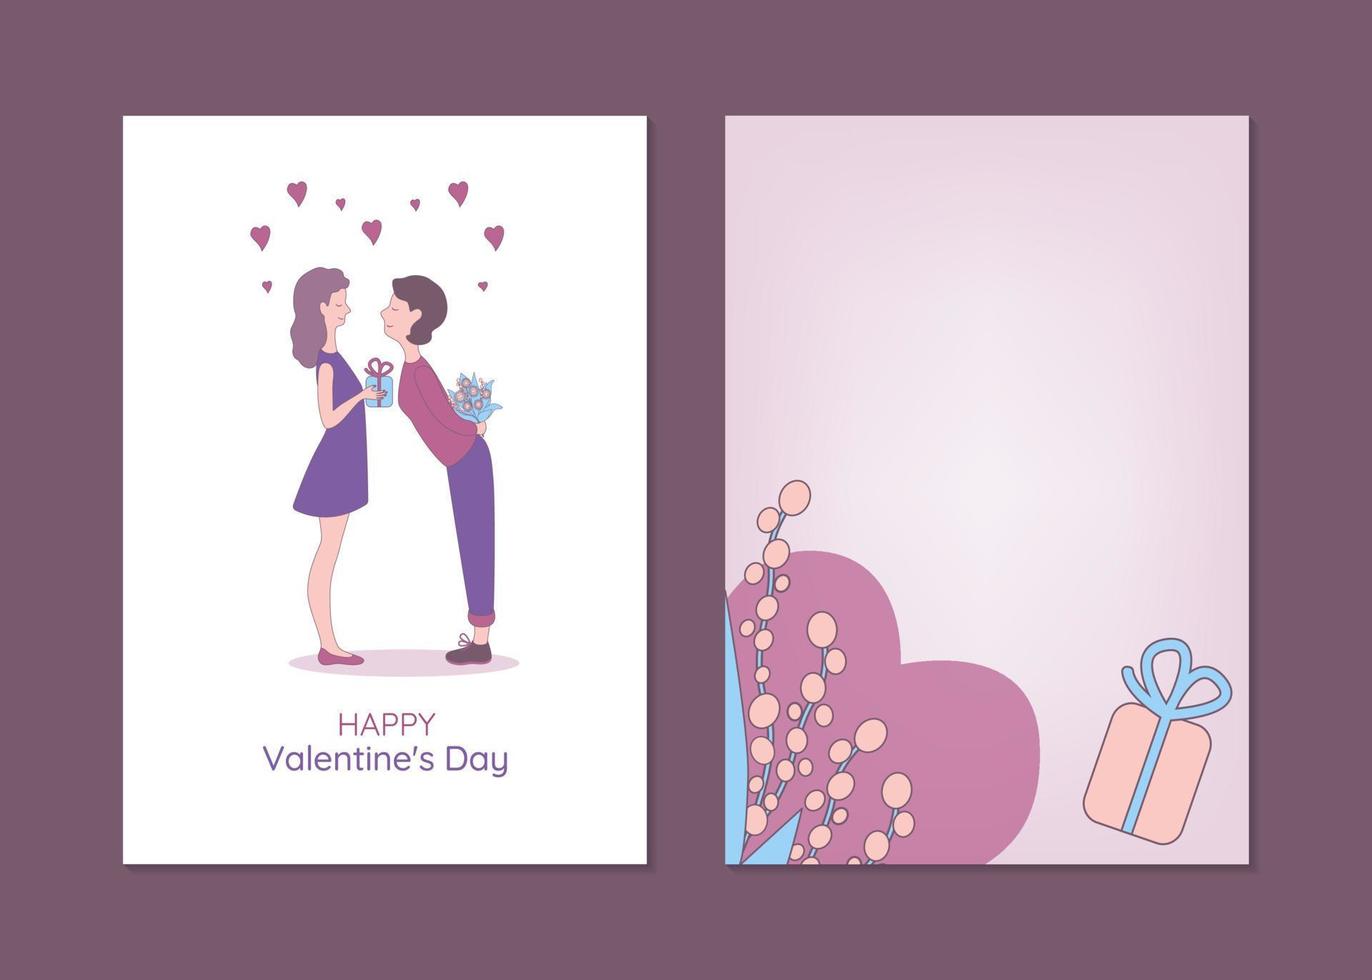 modèles de cartes de voeux saint valentin avec des personnes lgbtq. illustration vectorielle dessinée à la main d'un couple de lesbiennes échangeant des cadeaux. vecteur